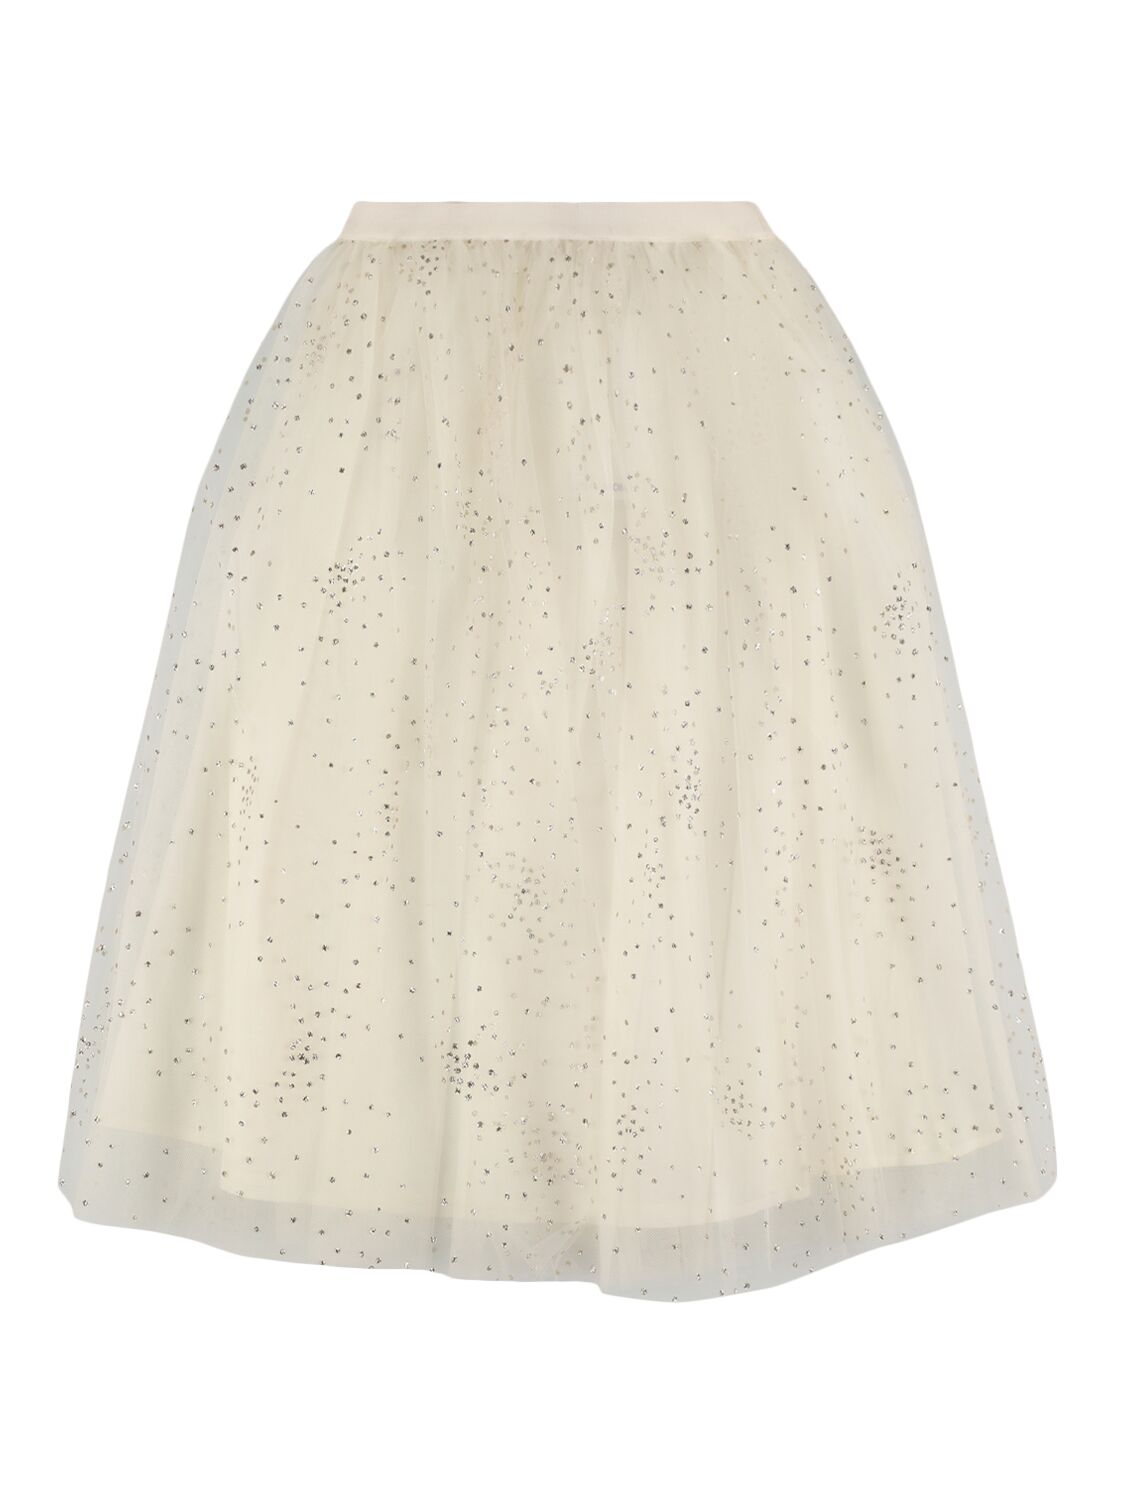 Bonpoint Kids' Glittered Stretch Tulle & Satin Skirt In White